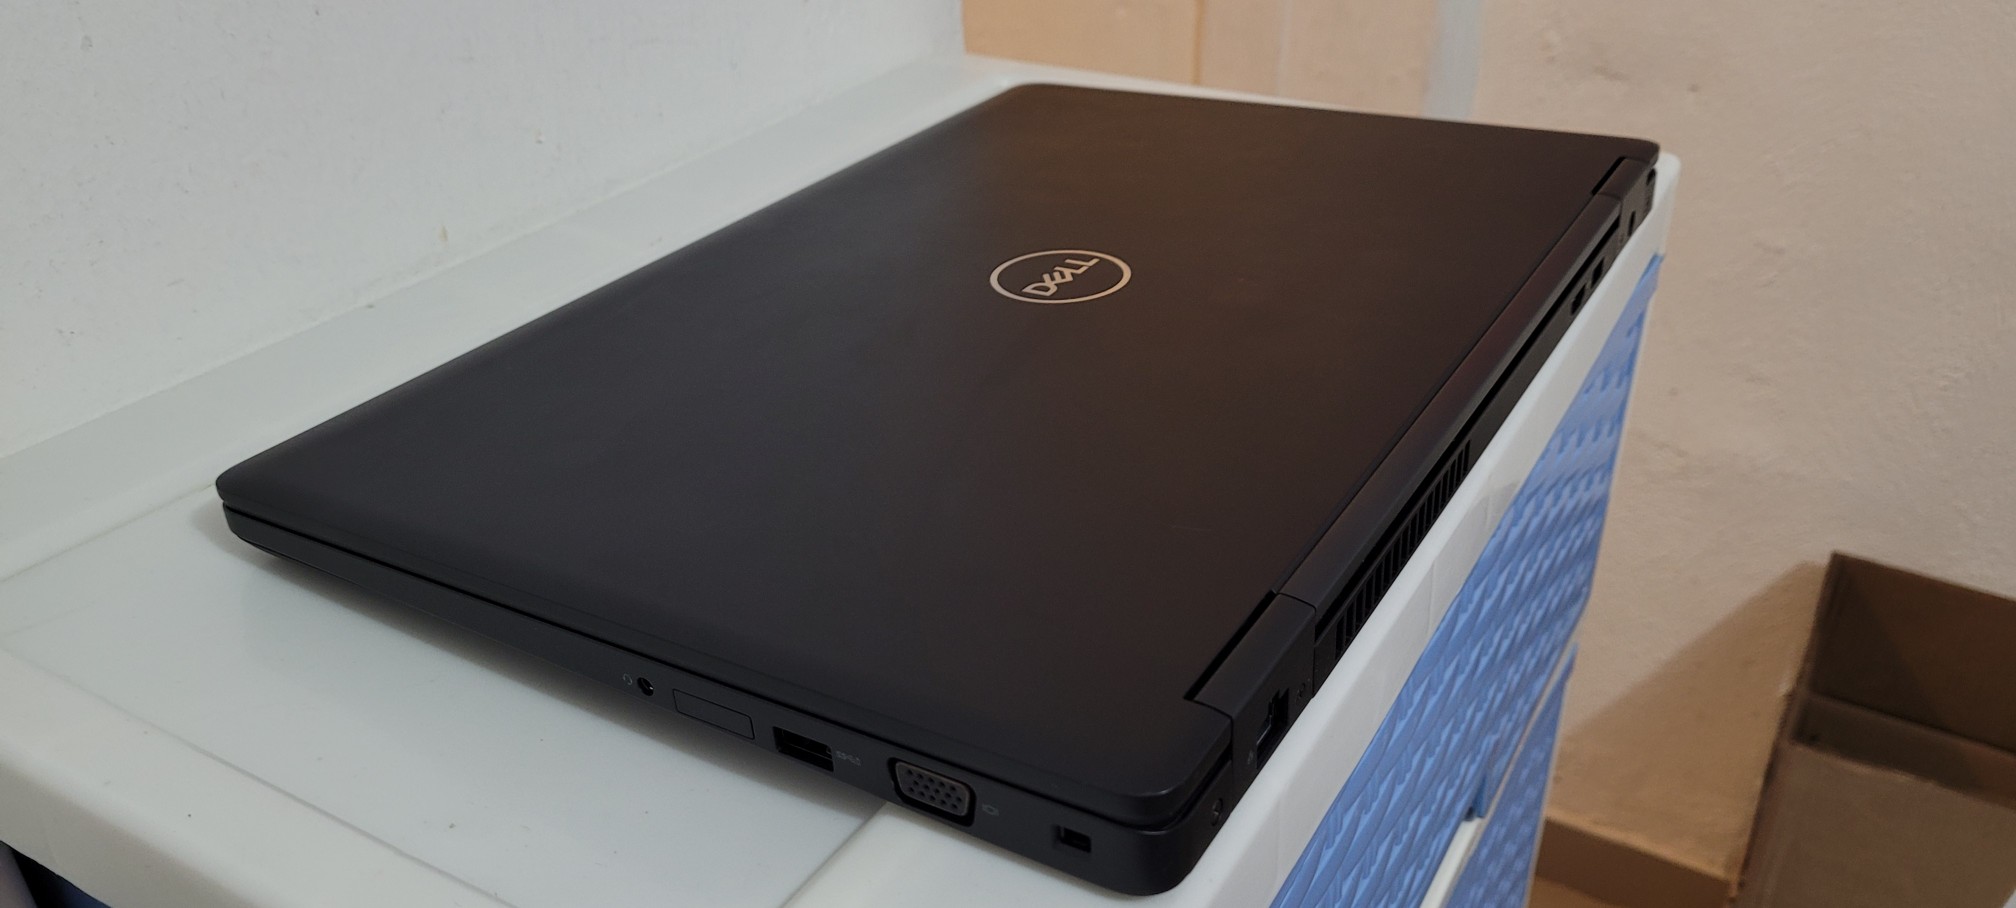 computadoras y laptops - Dell 5570 17 Pulg Core i5 6ta Ram 8gb ddr4 Disco 128gb Y 500gb Full 2